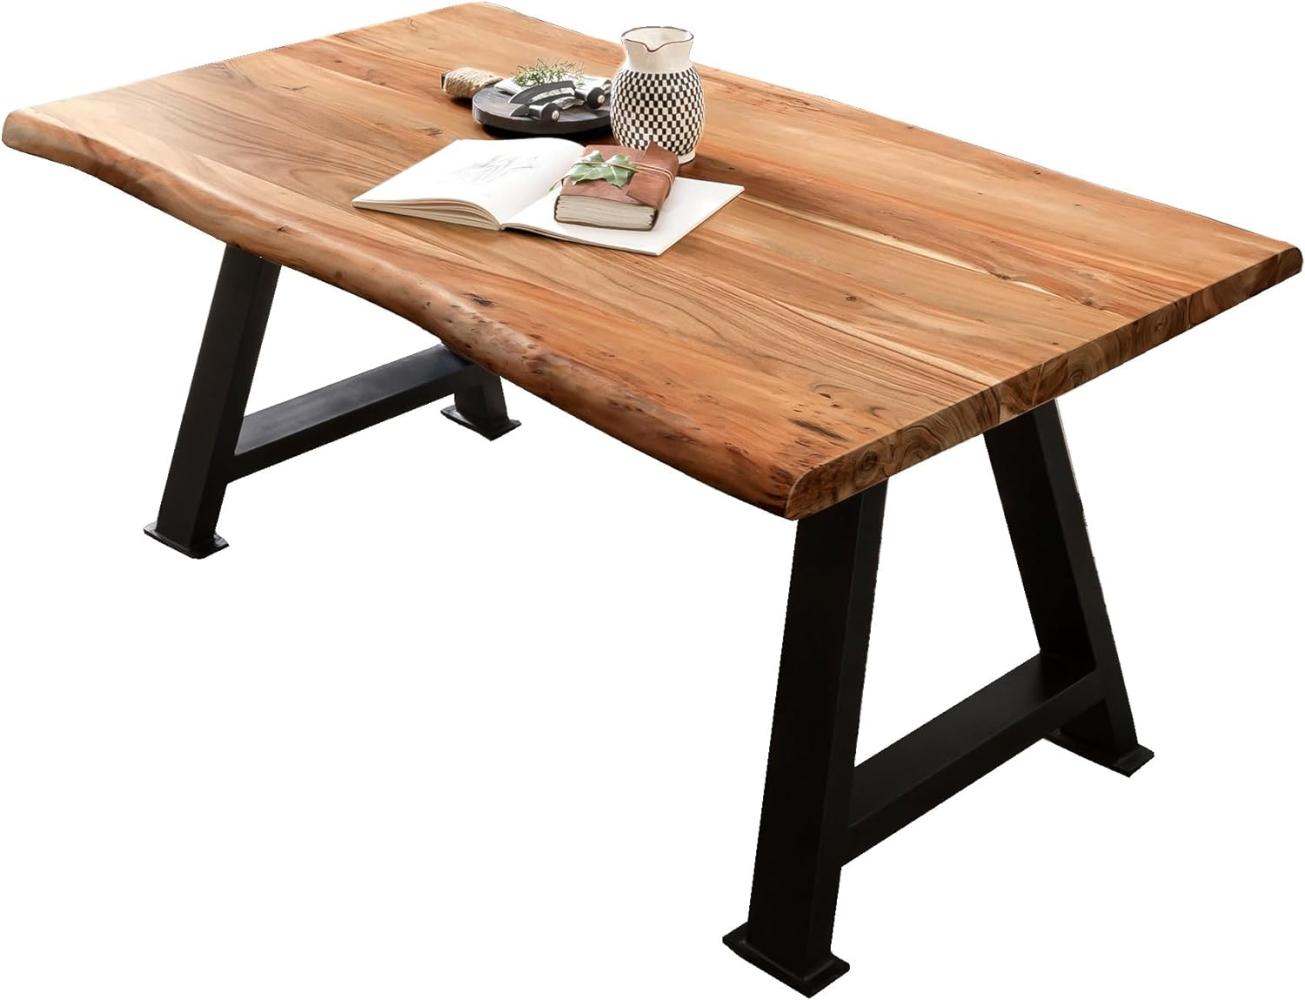 Tisch 200x100 Akazie Metall Holztisch Esstisch Speisetisch Küchentisch Esszimmer Bild 1